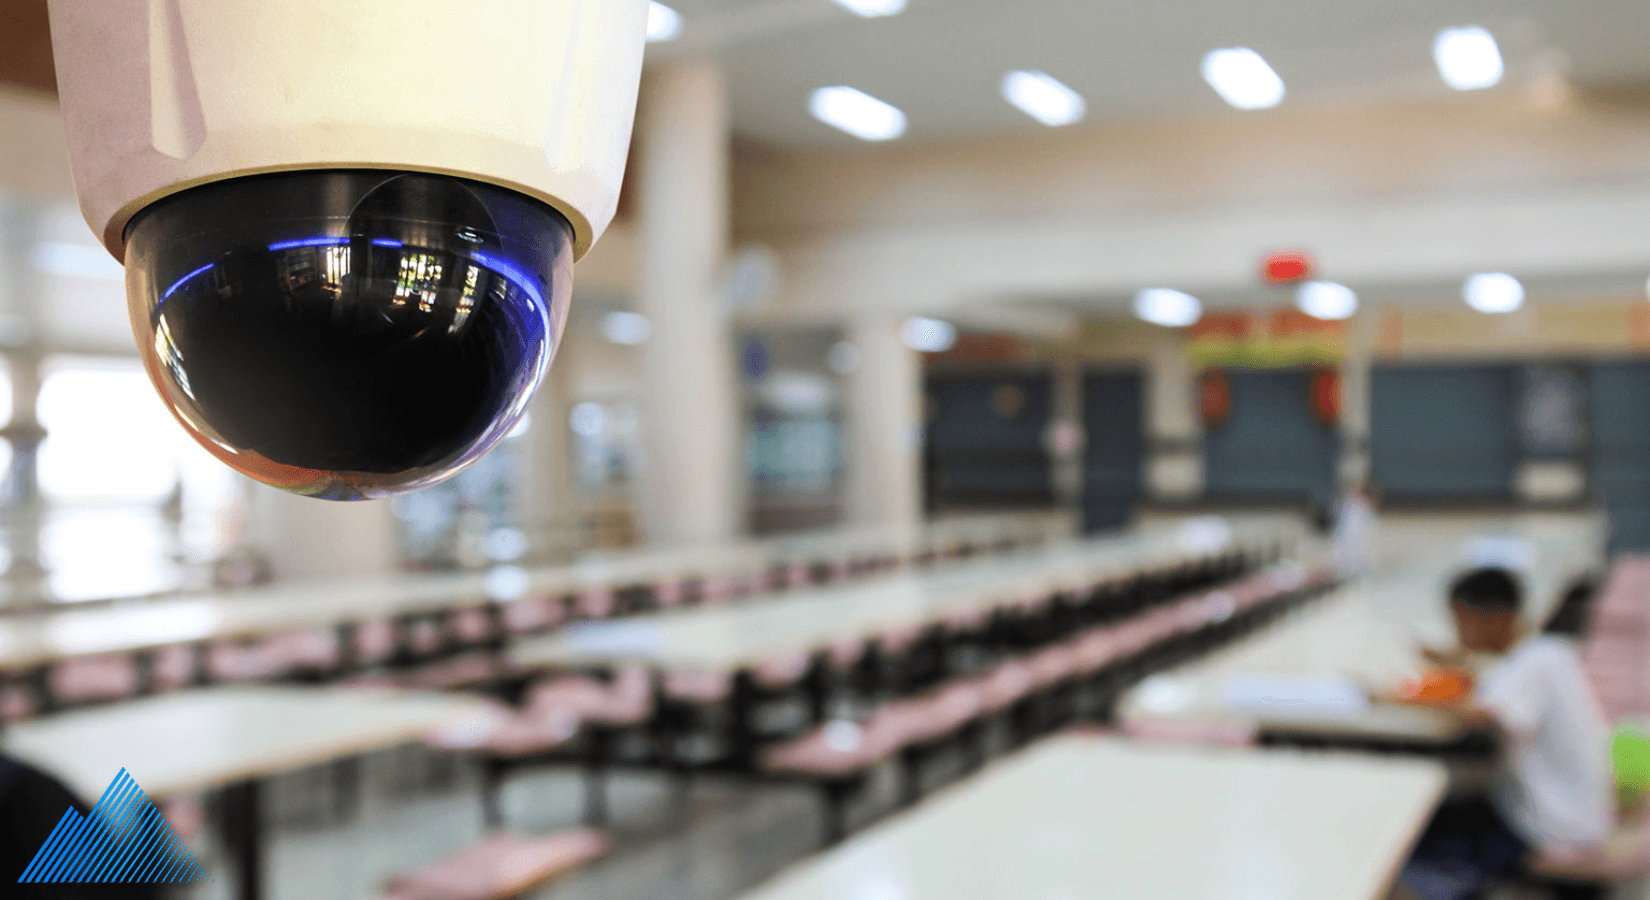 school security cameras